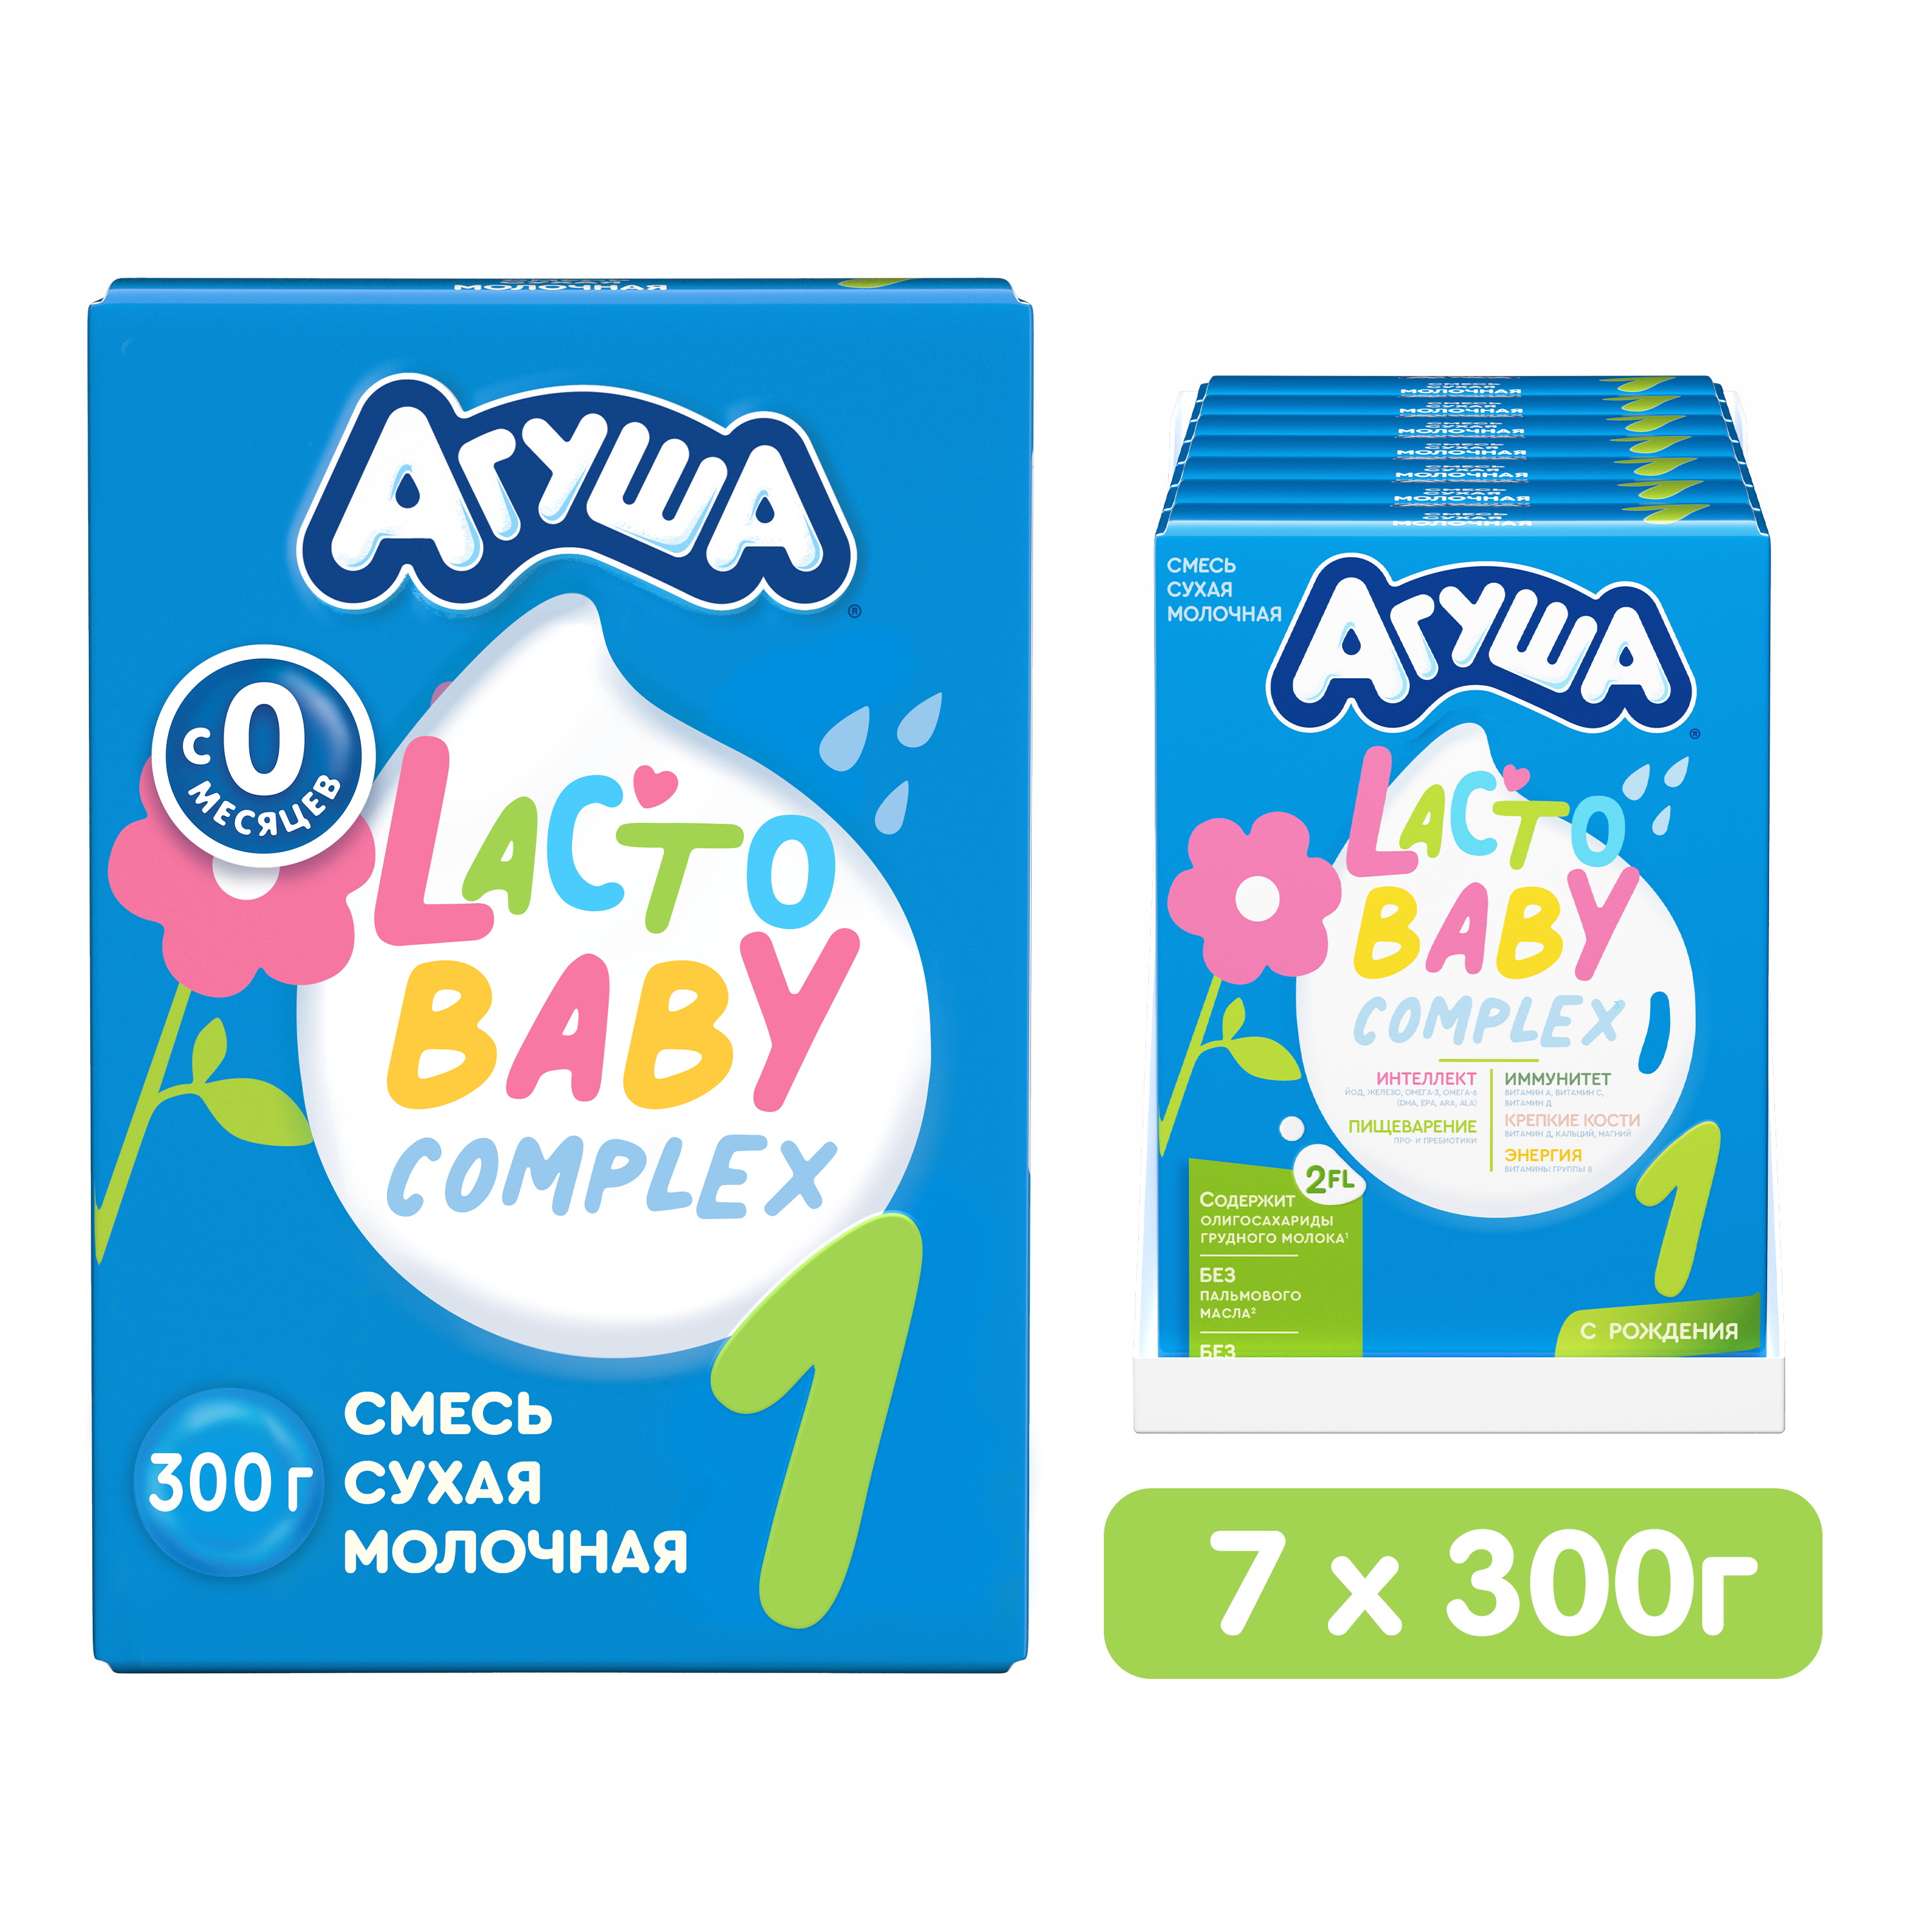 Детcкая сухая молочная смесь Агуша, 1 ступень, от рождения до 6 месяцев, 7шт. по 300гр.